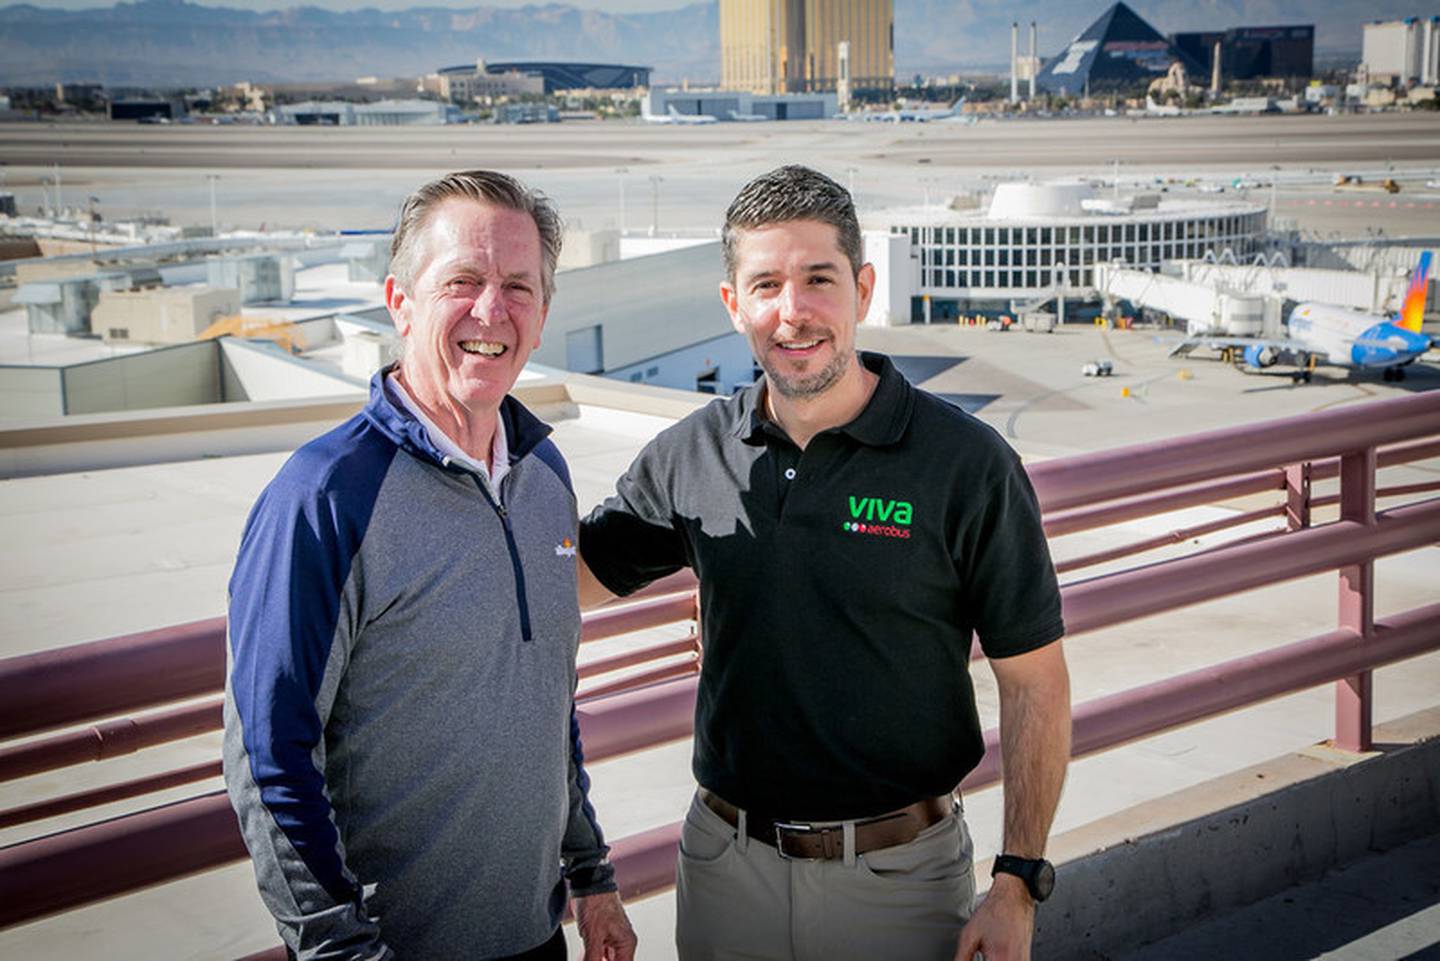 El presidente y director general de Allegiant, Maurice J. Gallagher, Jr. y el director ejecutivo de Viva Aerobus, Juan Carlos Zuazua, fotografiados en el Aeropuerto Internacional McCarran de Las Vegas. (Photo: Henri Sagalow)